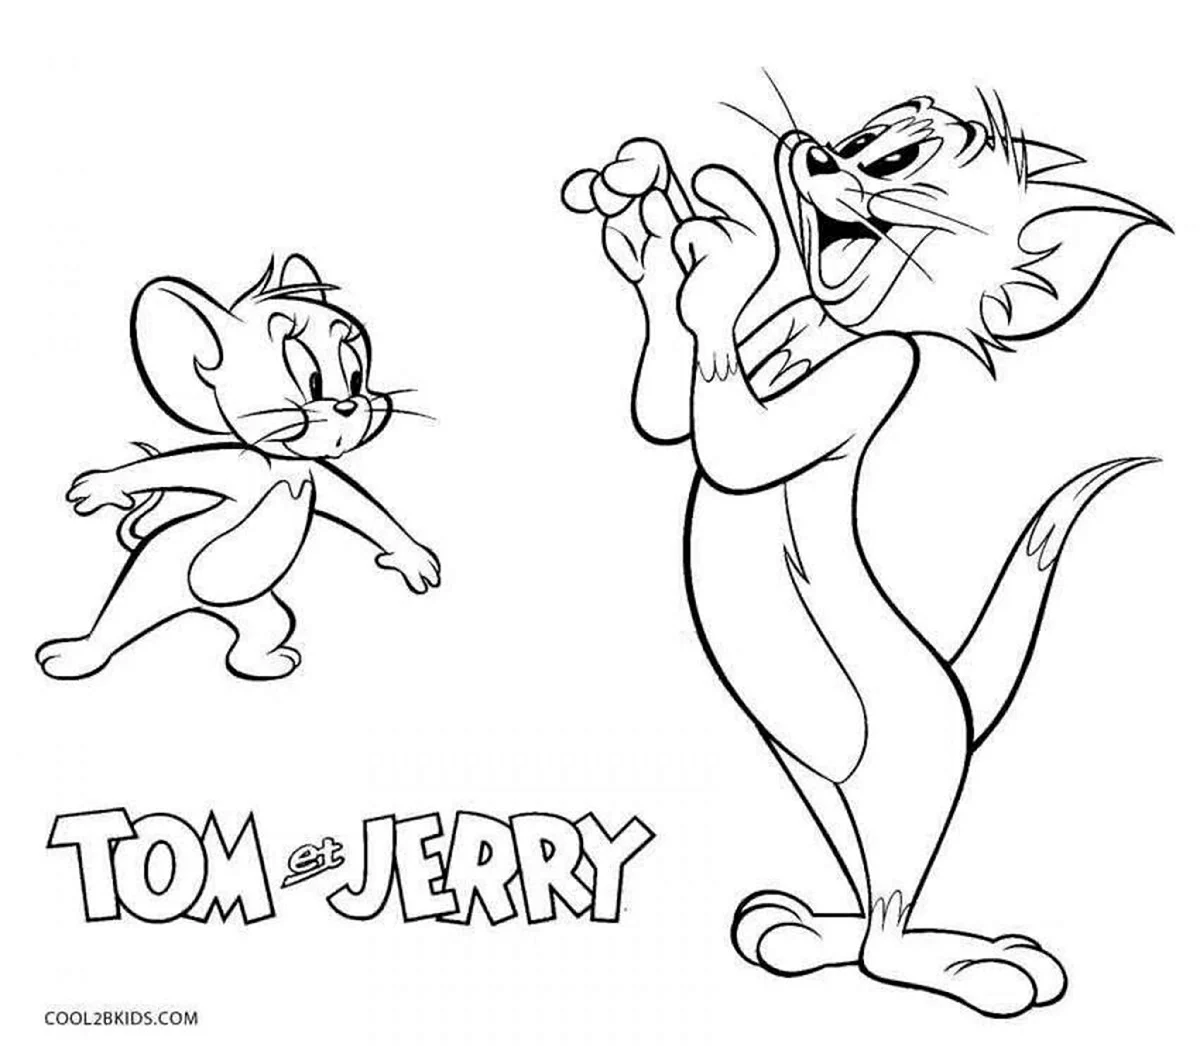 Том и Джерри. Для срисовки